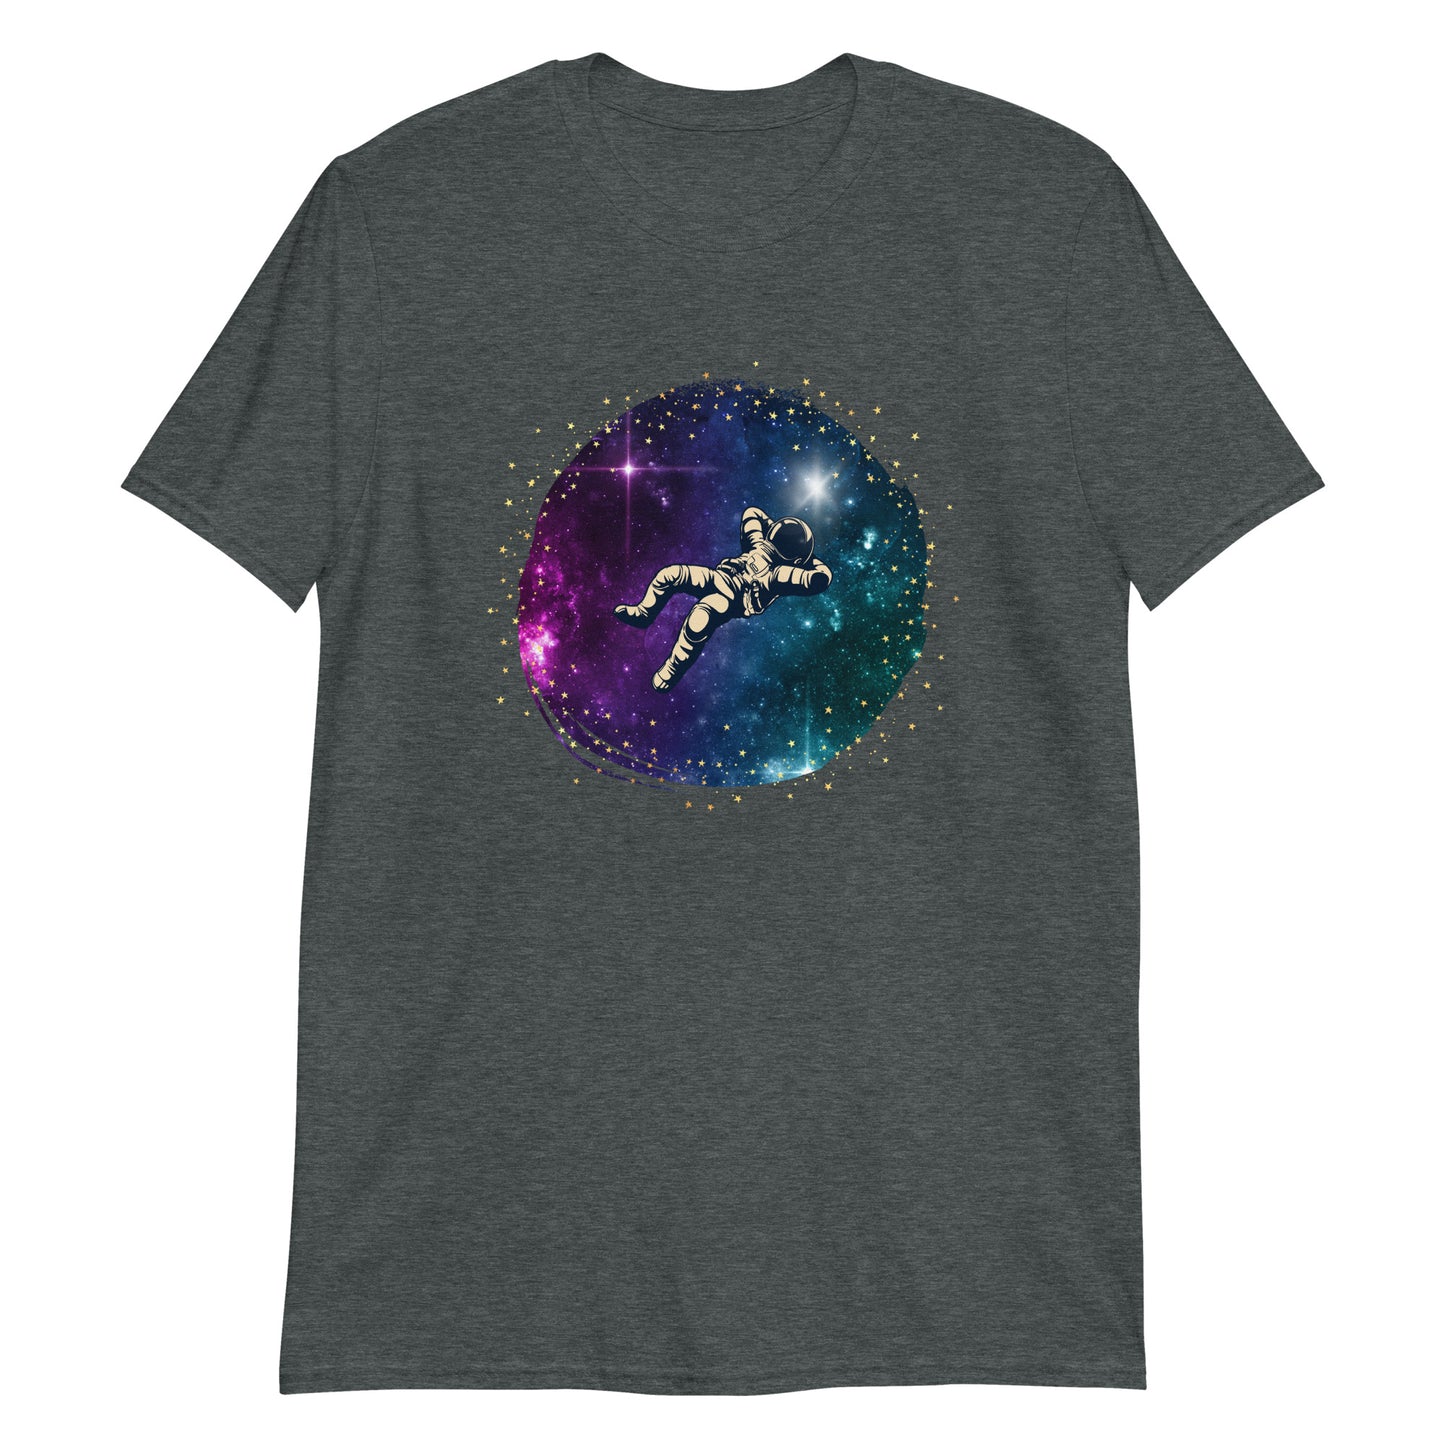 Spaceman - Short-Sleeve Unisex T-Shirt Dark Heather Unisex T-shirt Space